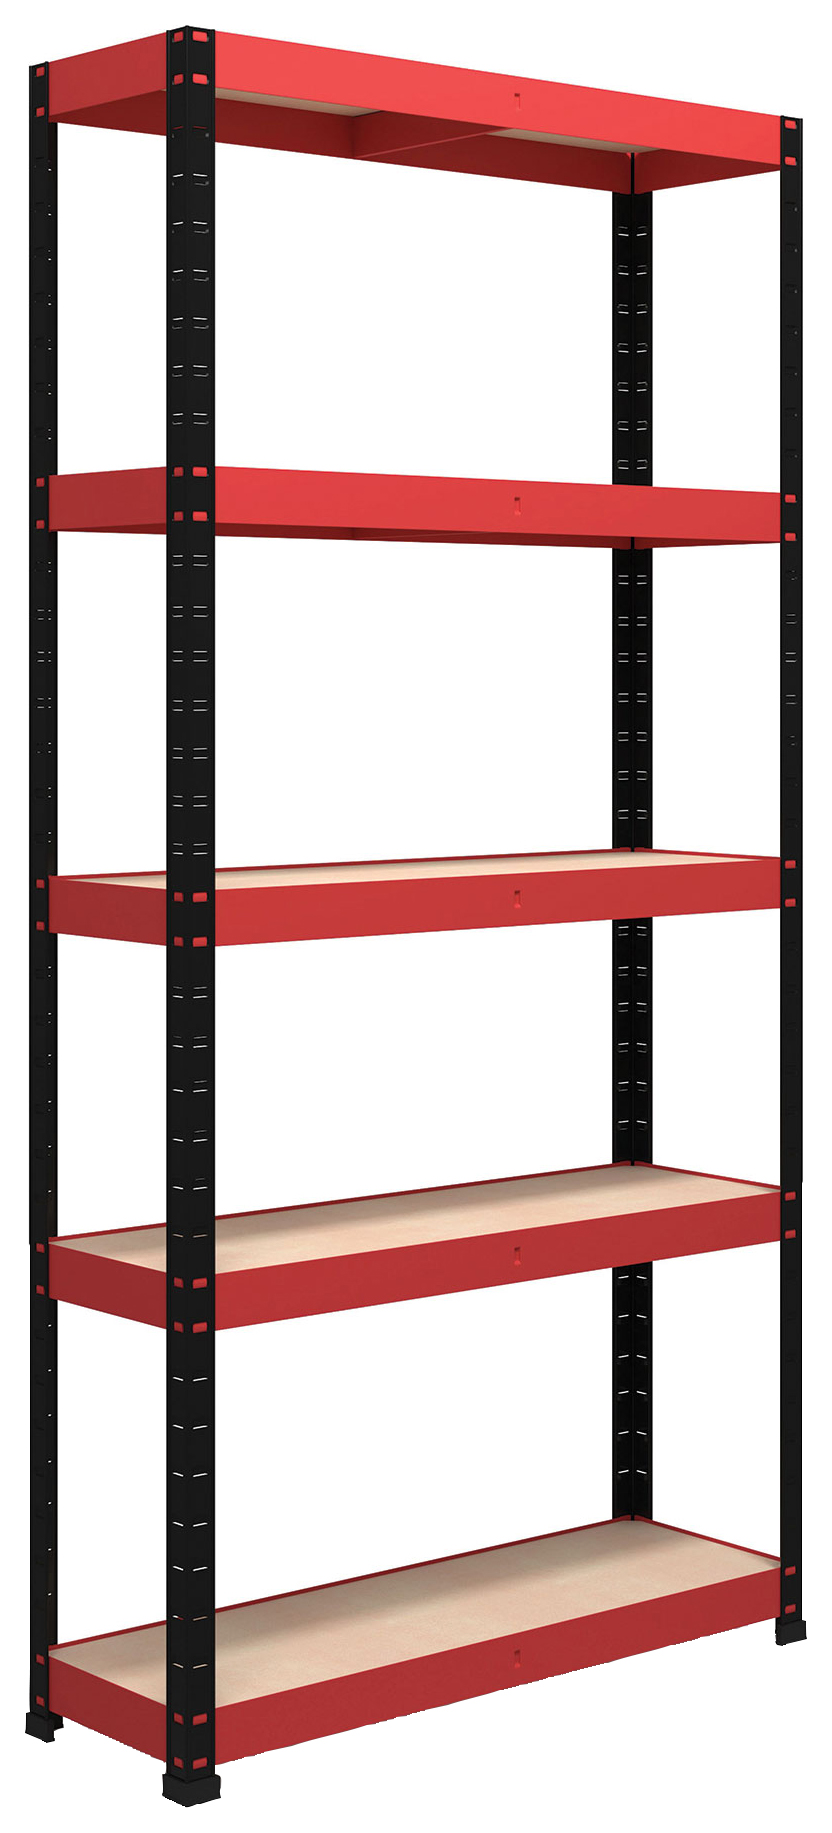 Image of Rb Boss Shelf Kit 5 Wood Shelves - 1800 x 900 x 300mm 250kg Udl